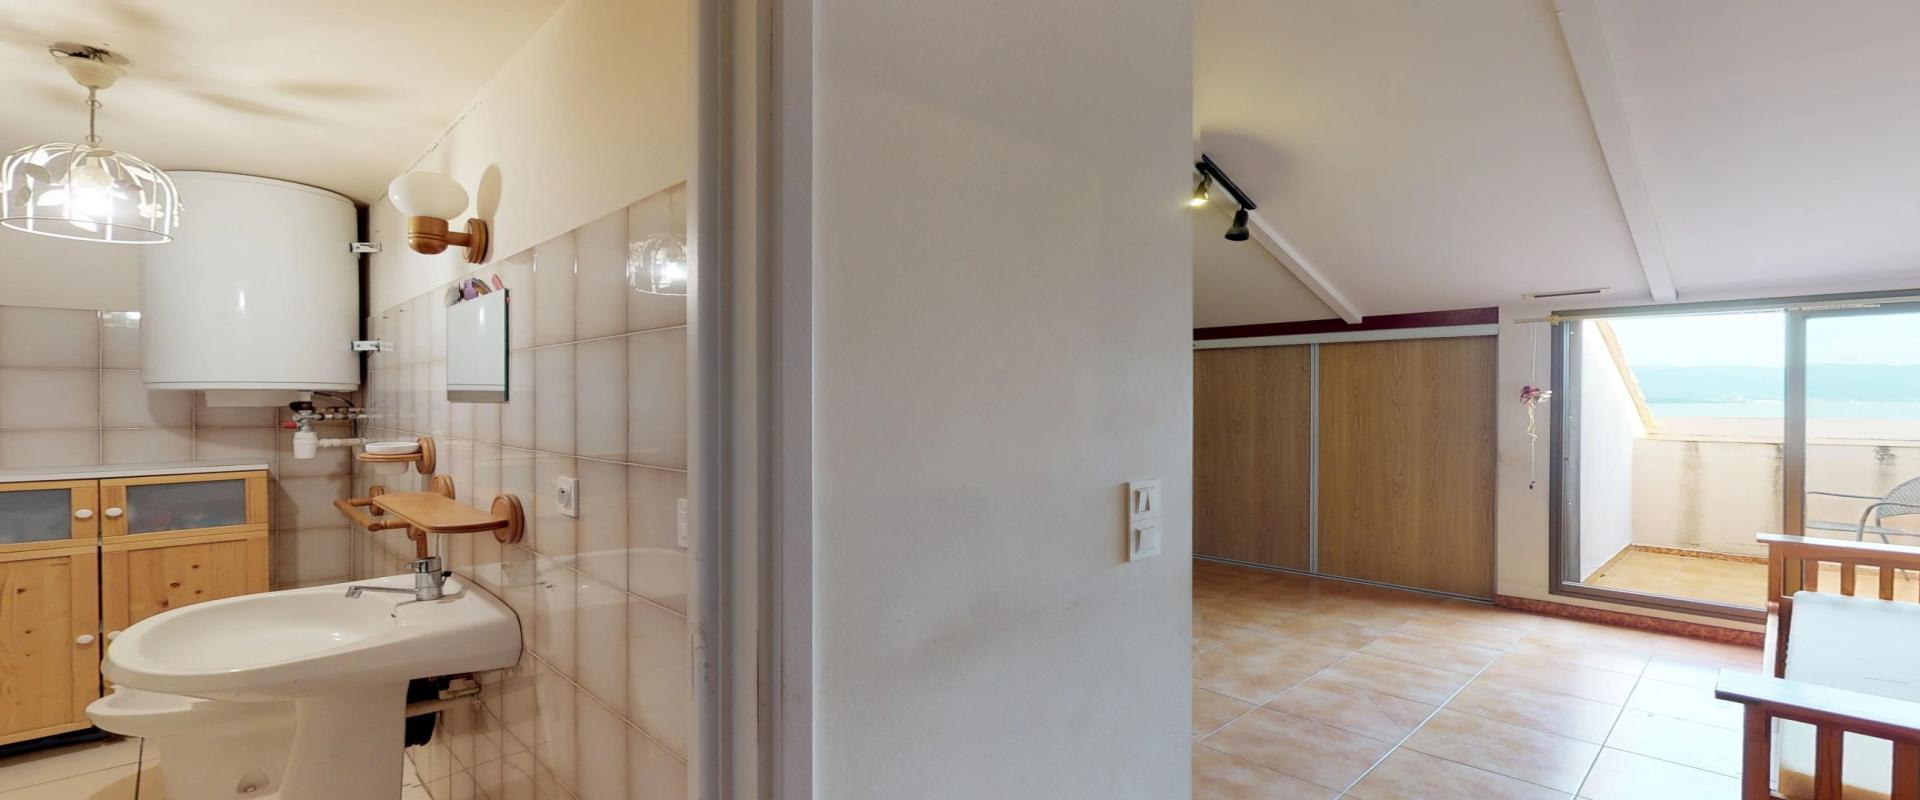 En Corse, à Ajaccio, place Miot, un studio de 25 m² au dernier étage avec vue mer. 